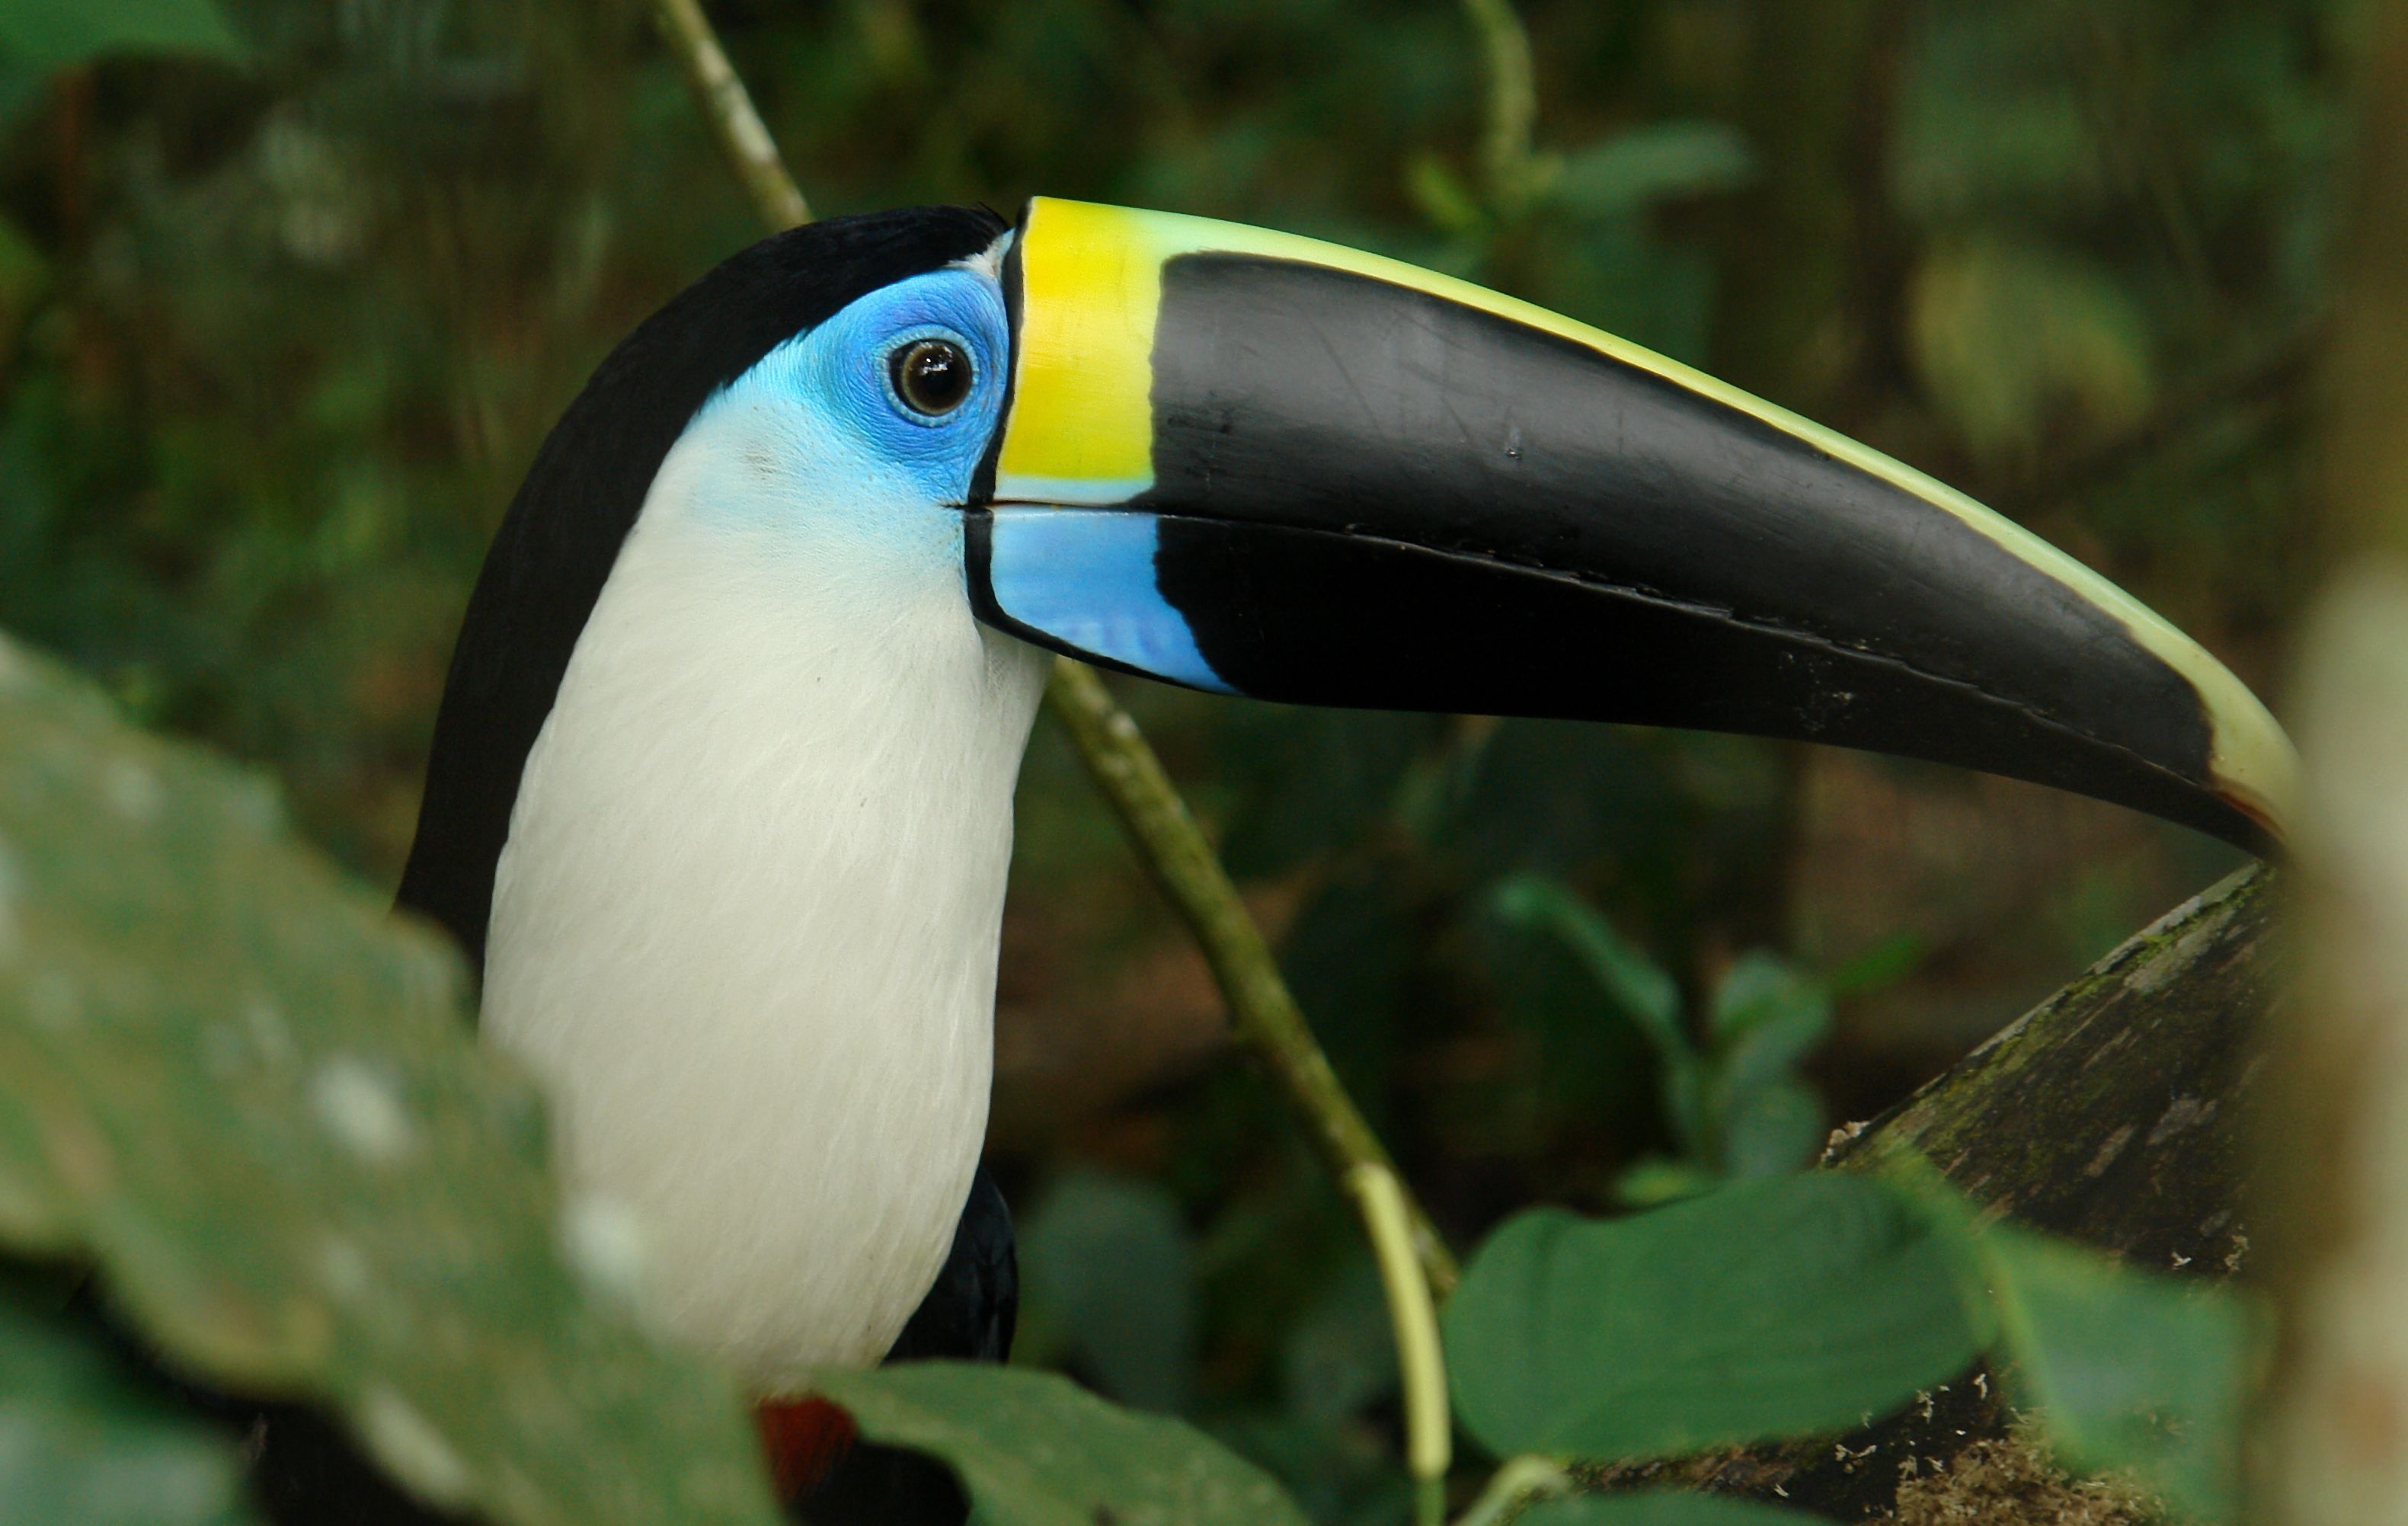 Toucan, Beautiful bird images, Toucan-themed ideas, Stunning nature photography, 3170x2010 HD Desktop